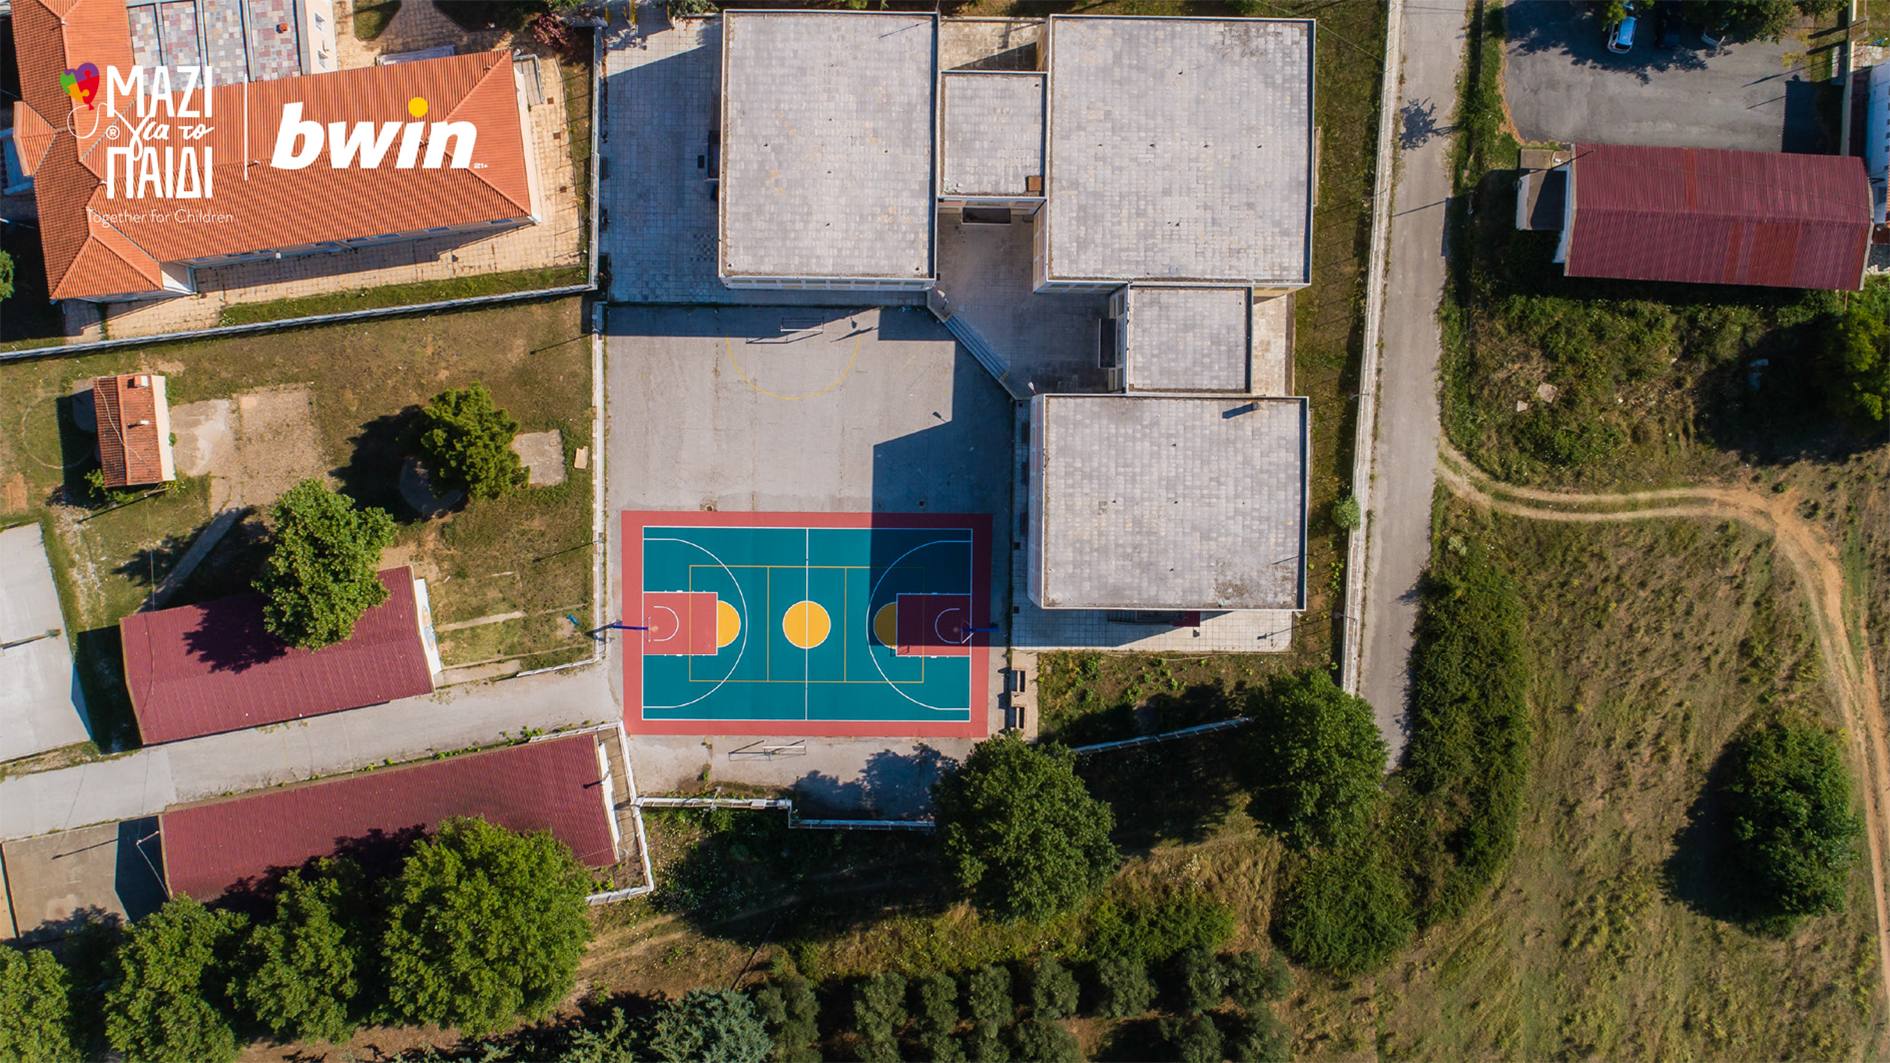 H  Ένωση «Μαζί για το Παιδί» σε συνεργασία με τη bwin  ανακατασκεύασε νέο σχολικό γήπεδο στο Διαπολιτισμικό Δημοτικό Σχολείο Σαπών του Δήμου Μαρωνείας-Σαπών